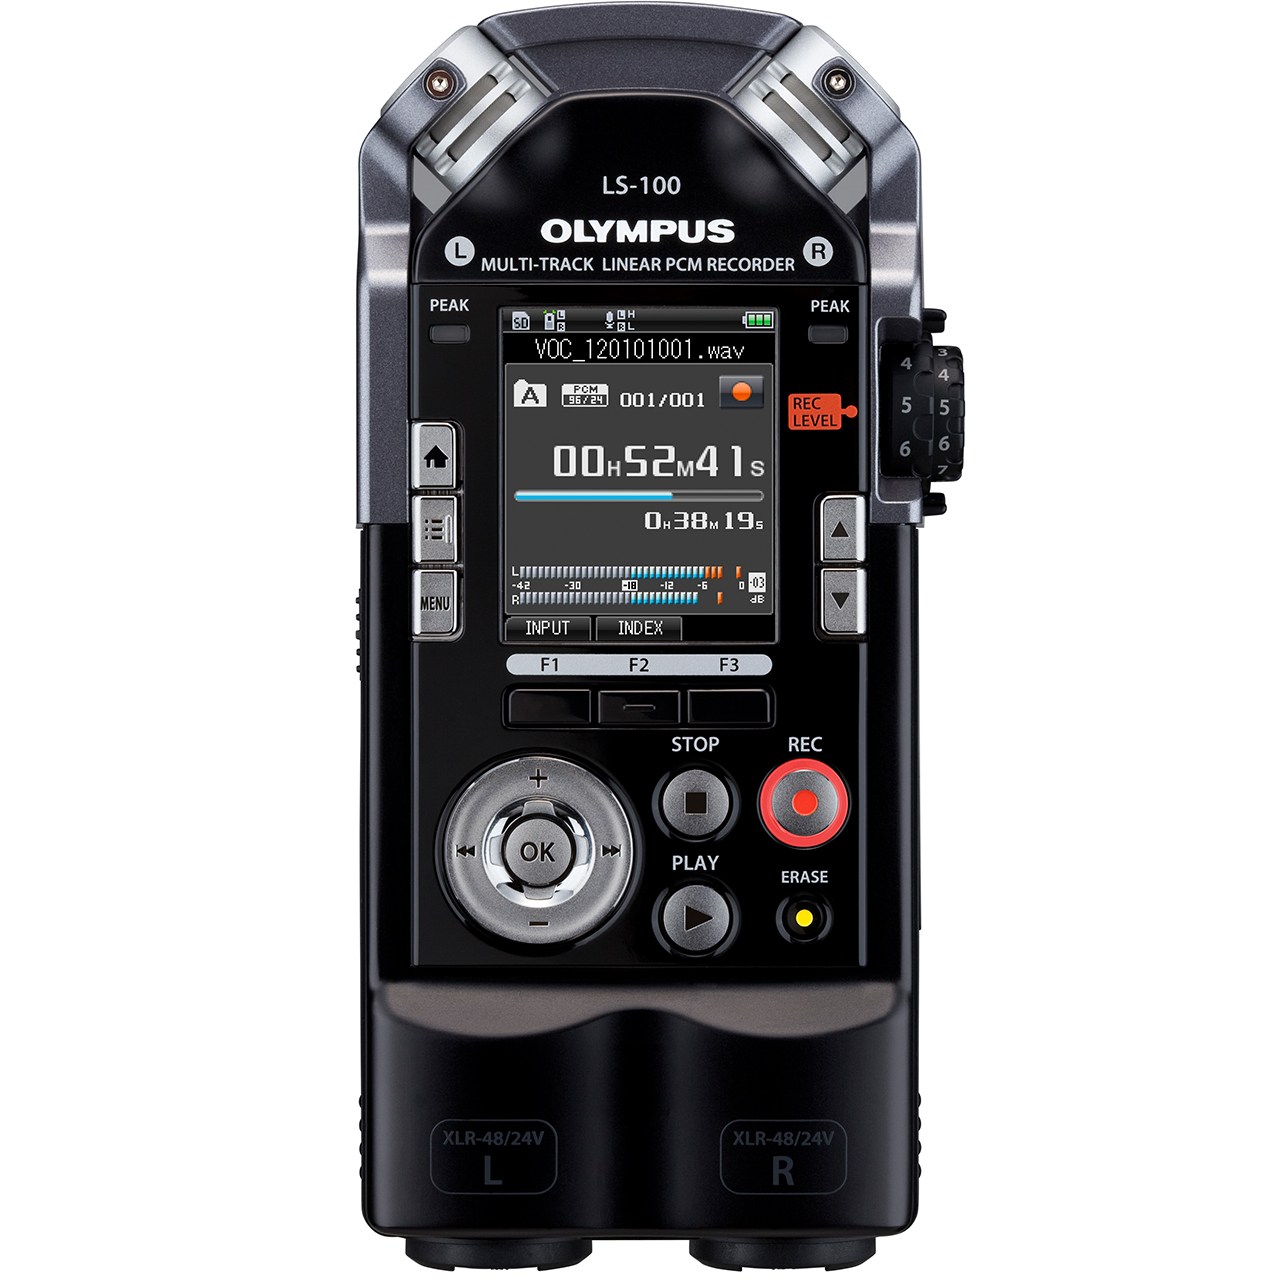 ضبط کننده دیجیتالی صدا الیمپوس مدل LS-100 به همراه کیت اتصال به دوربین